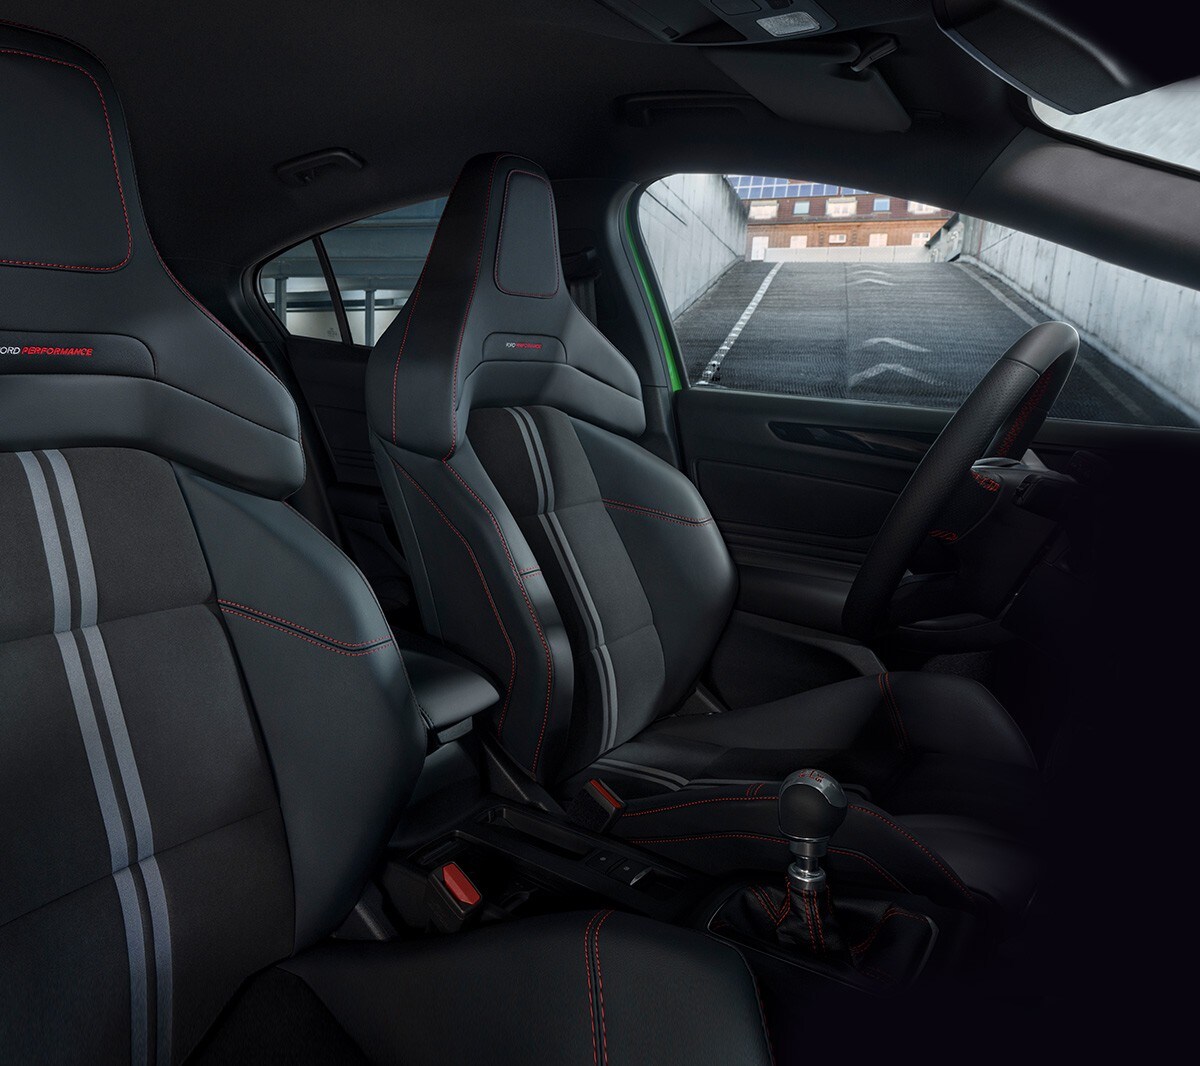 Ford Focus ST Innenraum. Detailansicht der Sitze.